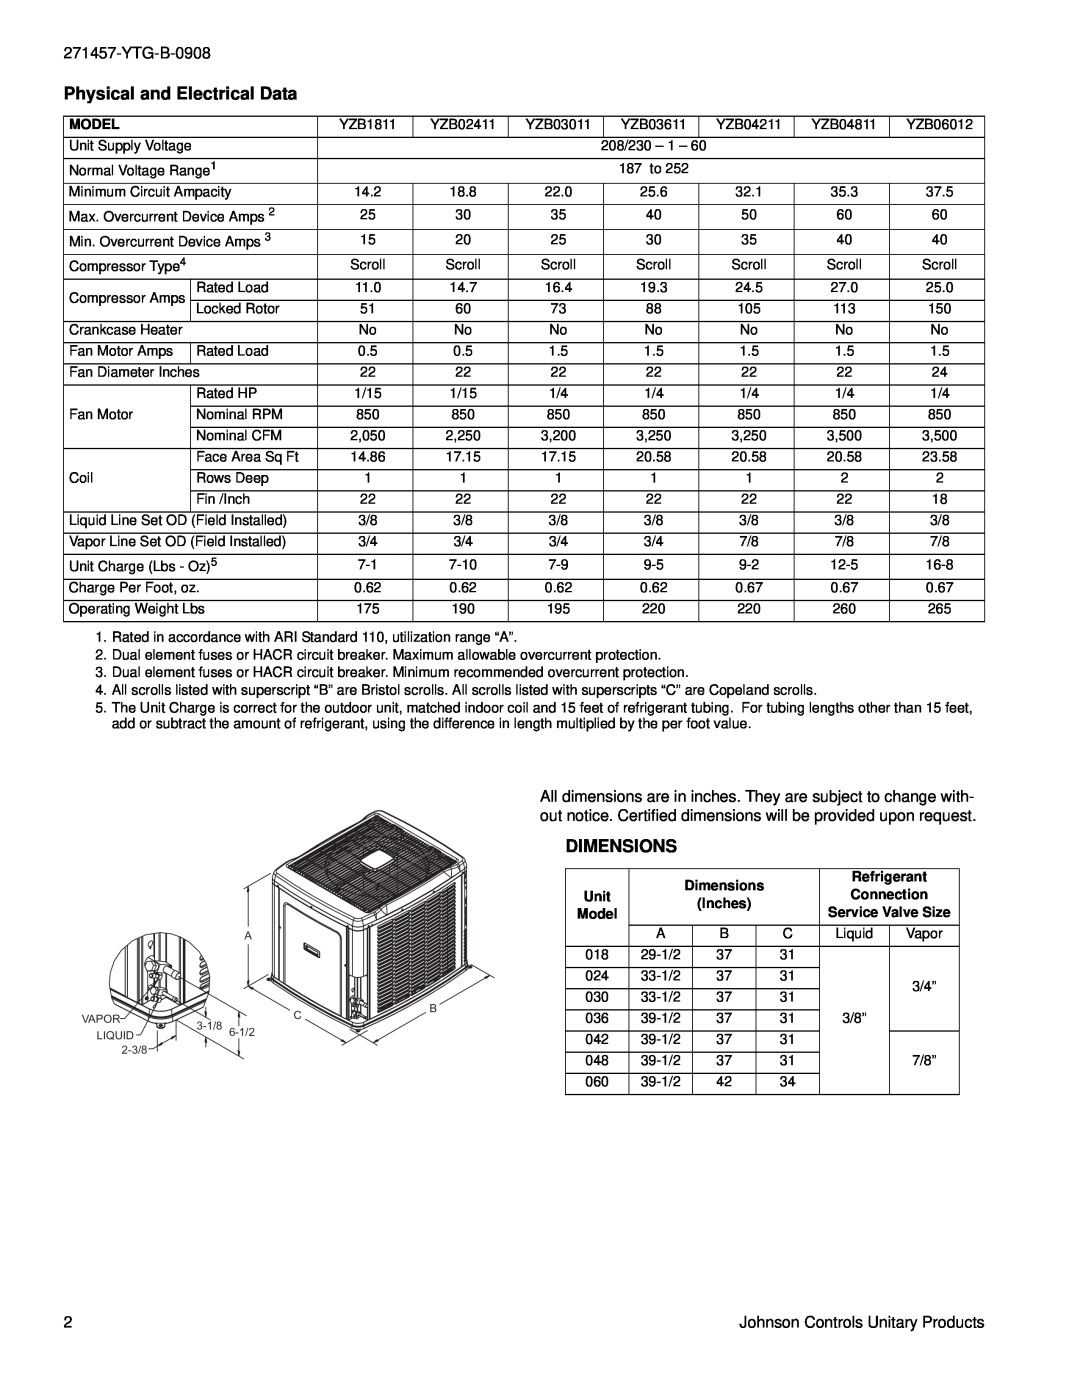 York YZB018 THRU 060 warranty Physical and Electrical Data, Dimensions, YTG-B-0908 